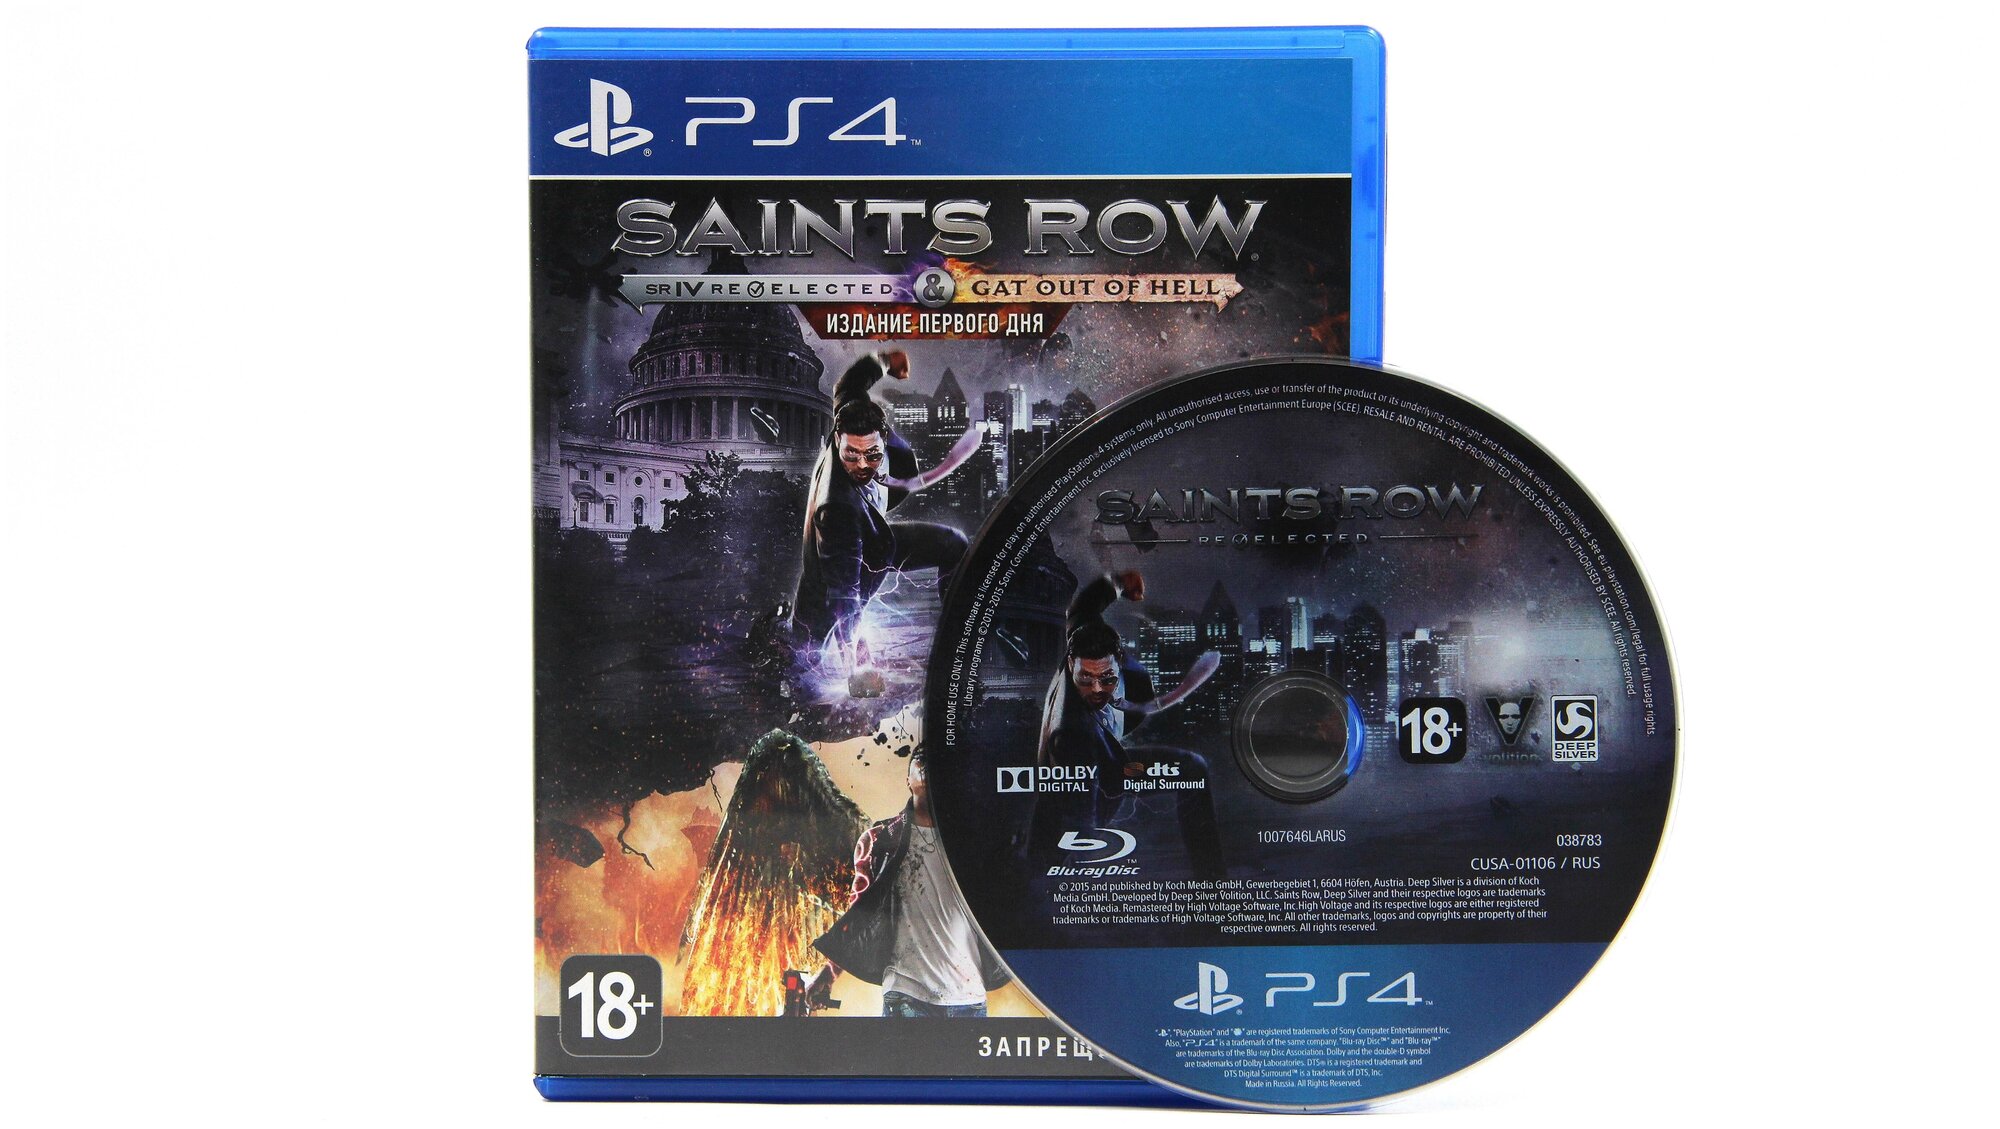 Saints Row IV Re-Elected: Издание первого дня (PS4, рус.)